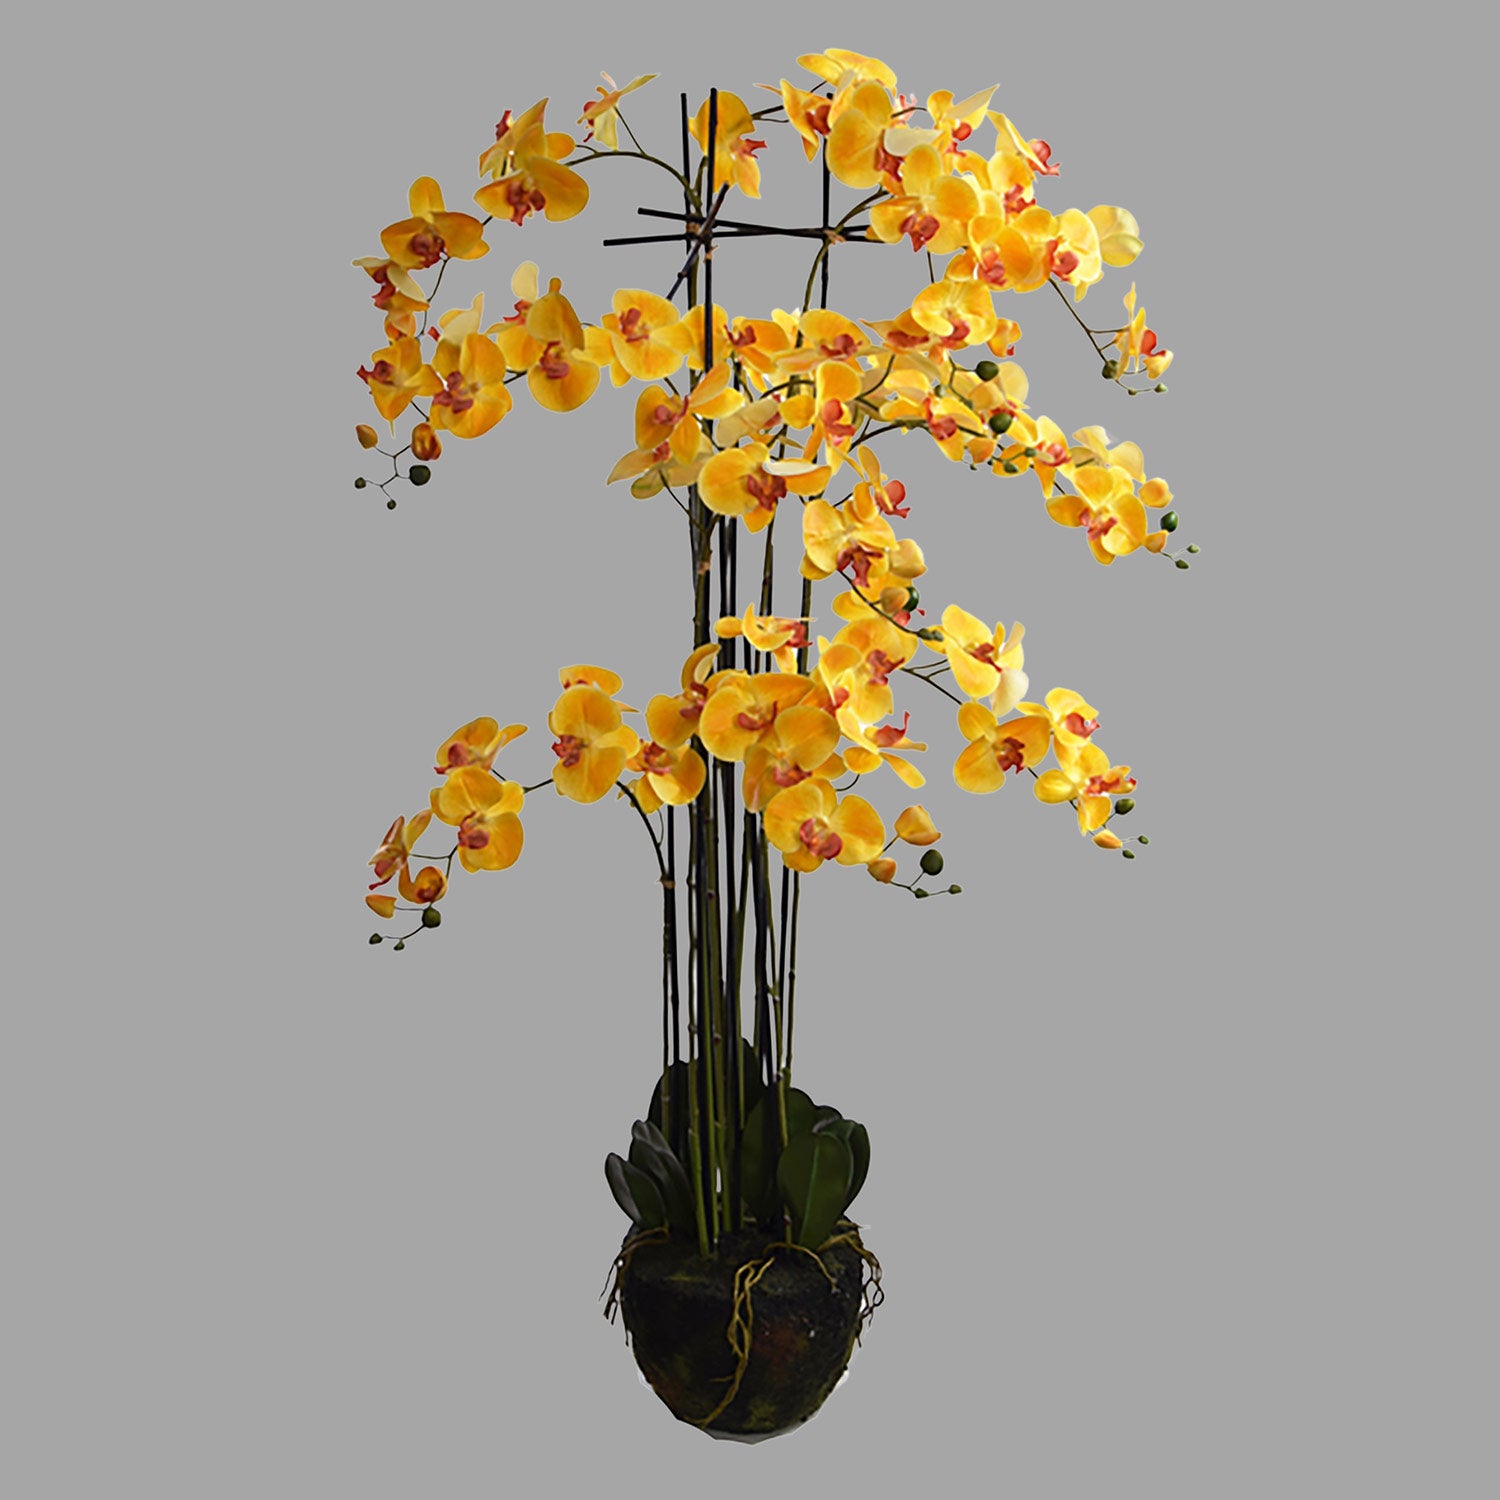 Sárga színű mű orchidea, mesterséges földlabdában.